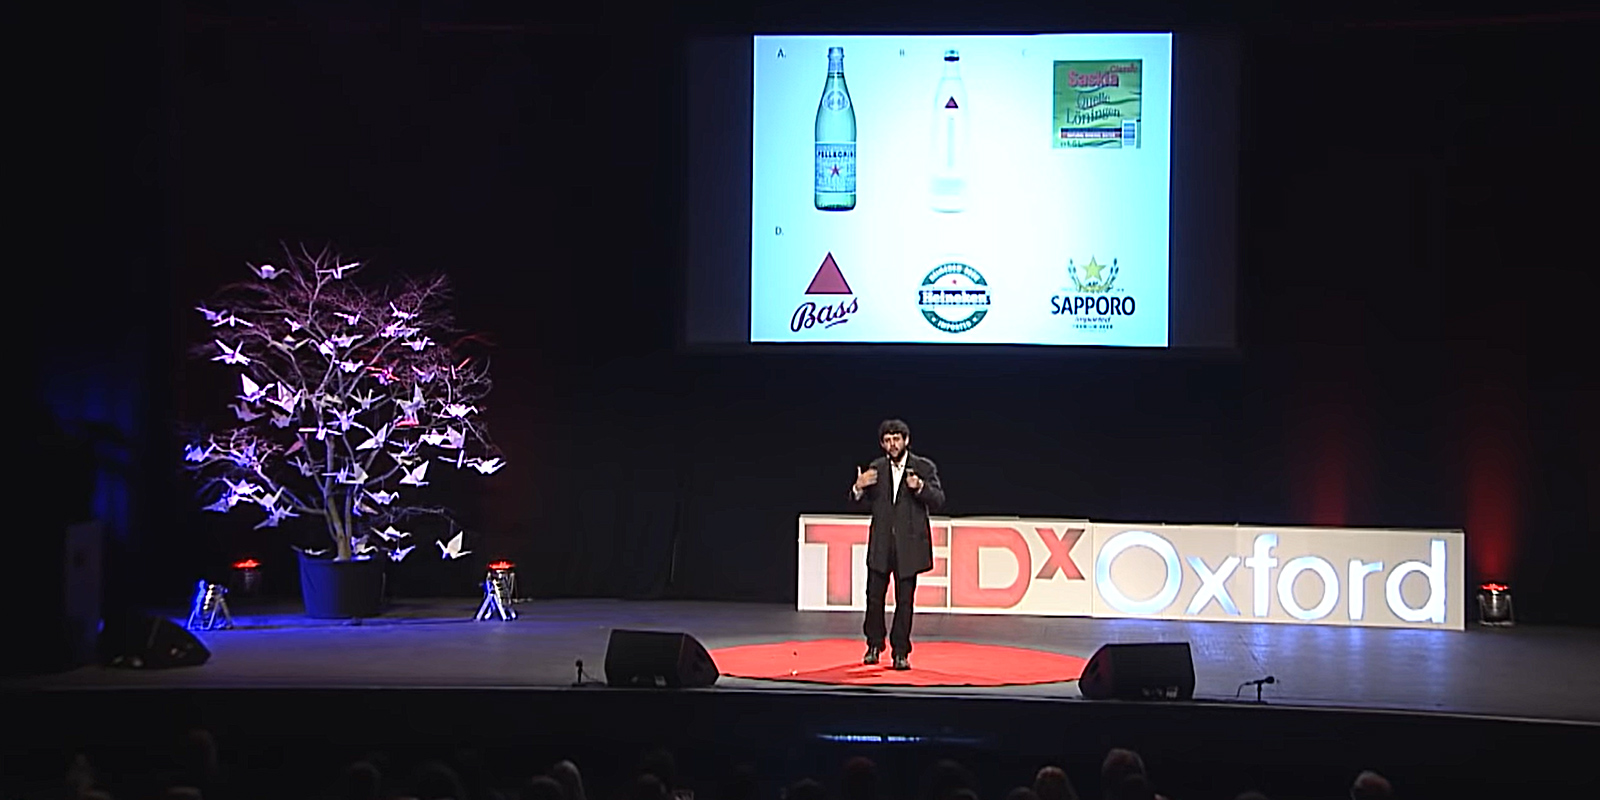 Alejandro Salgado Montejo dando una charla en el escenario de TEDxOxford. De fondo se proyecta una imagen con varios logos y botellas de cervezas reconocidas.